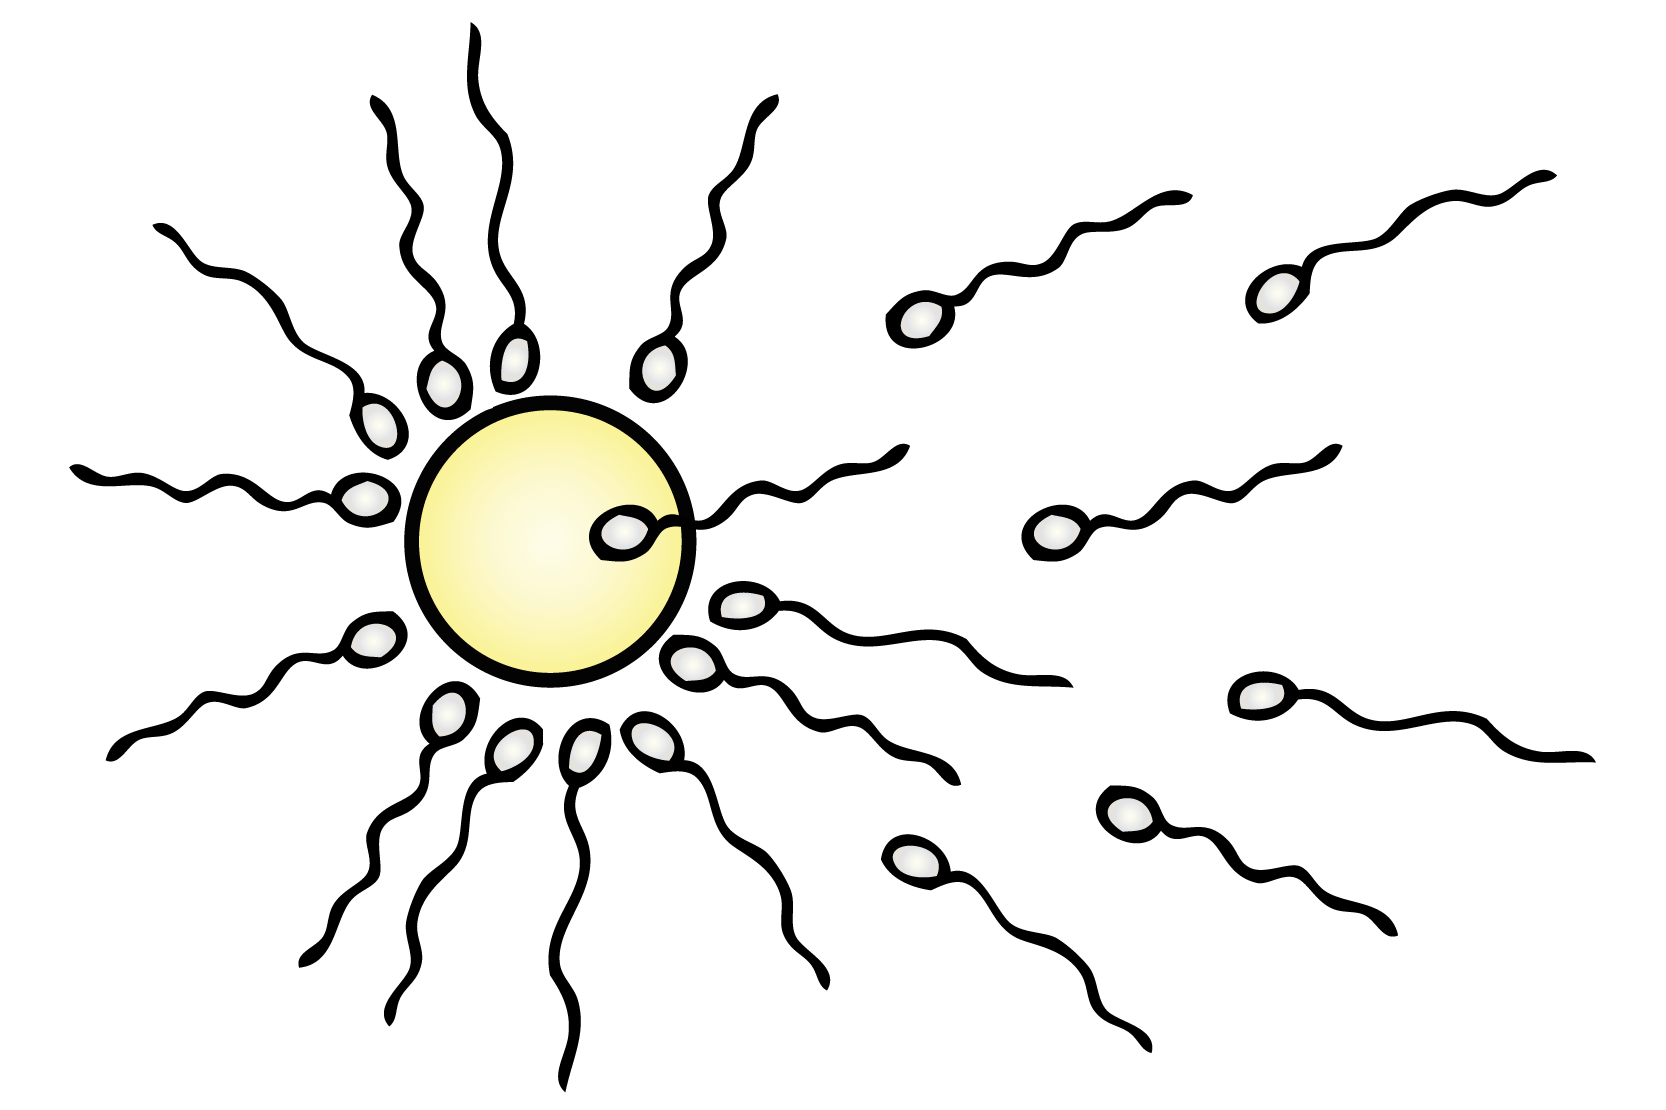 Flera spermier runt ett ägg, där en kommit in. Illustration.